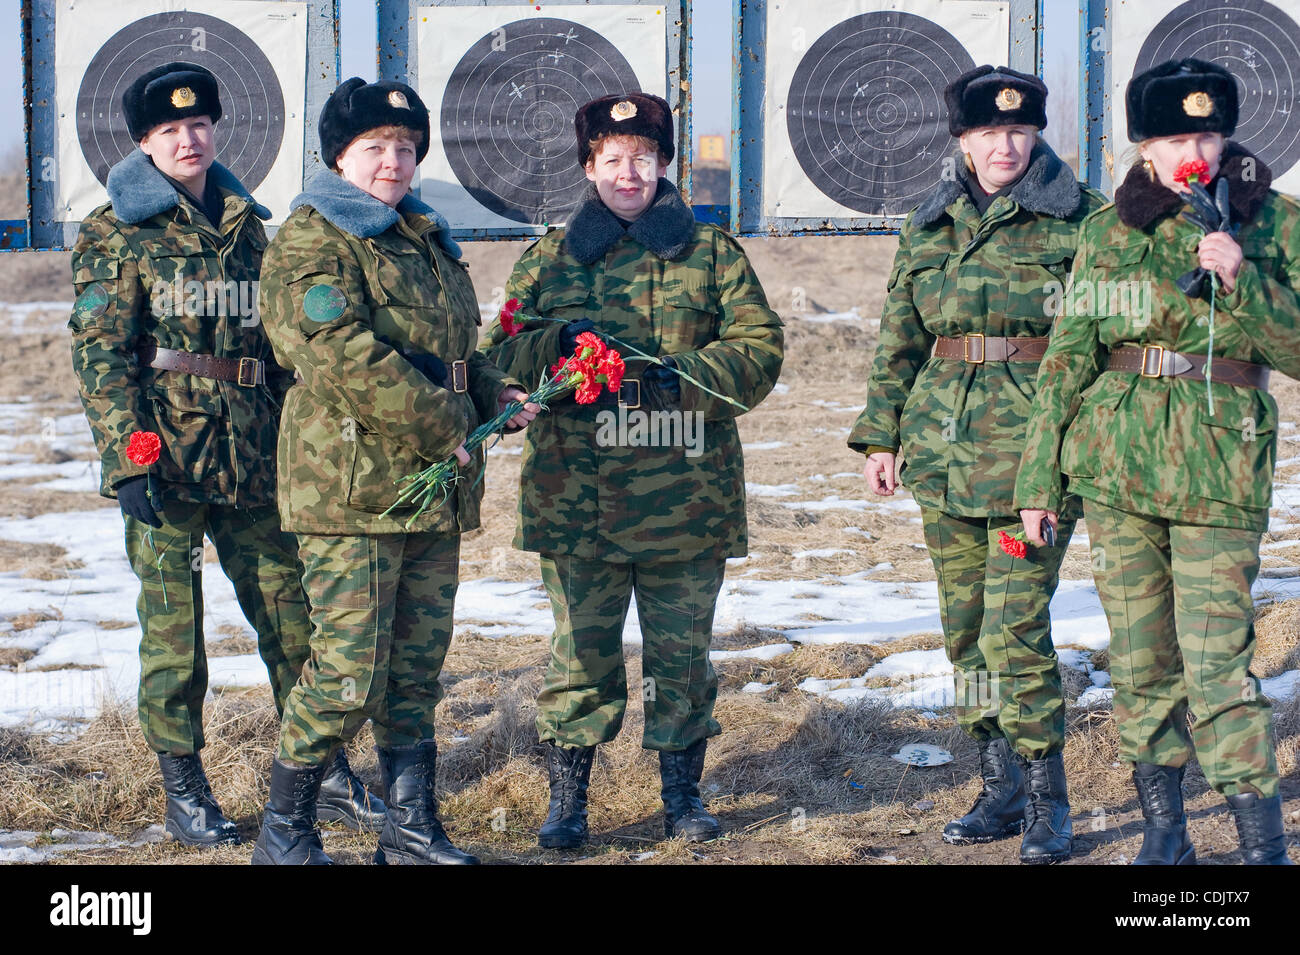 Frauen - Soldaten der russischen Armee auf der Dreharbeiten Palette Khmelyovka Militärbasis im Kaliningrader Gebiet der Russischen Föderation. Stockfoto